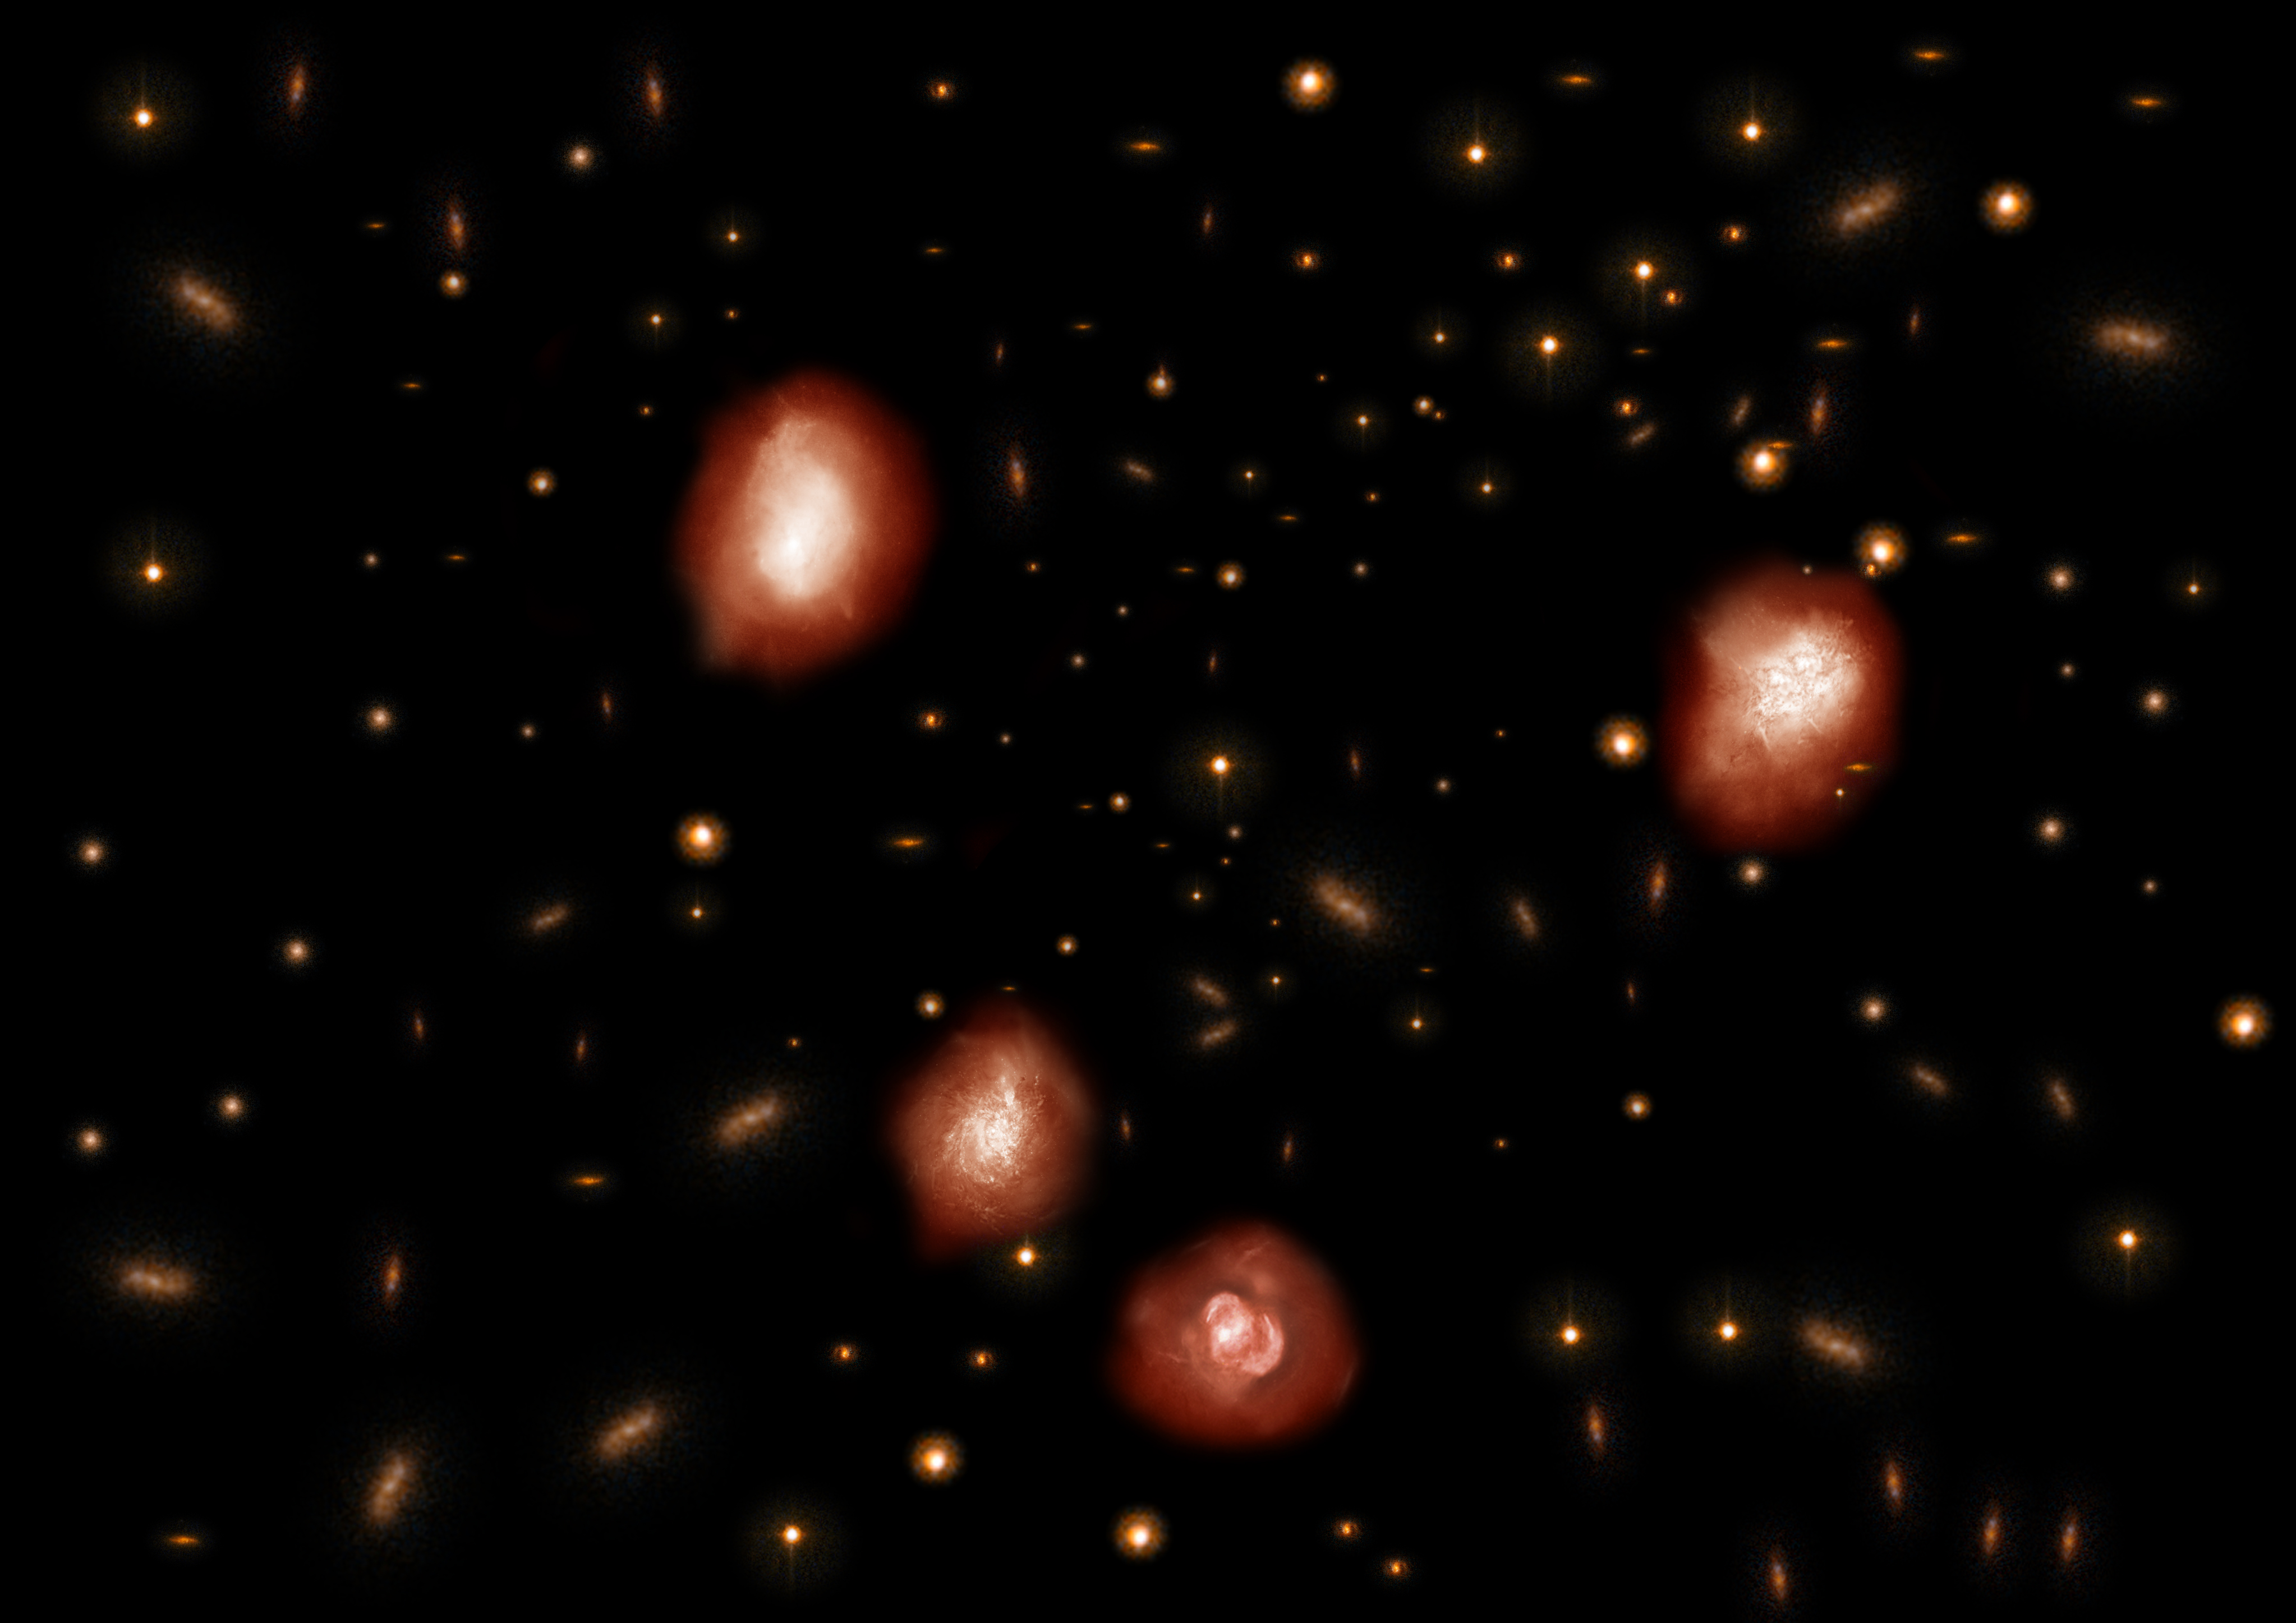 プレスリリース アルマ望遠鏡 39個の 見えない銀河 を捉える 宇宙進化理論に謎を突きつける楕円銀河の祖先たち アルマ望遠鏡